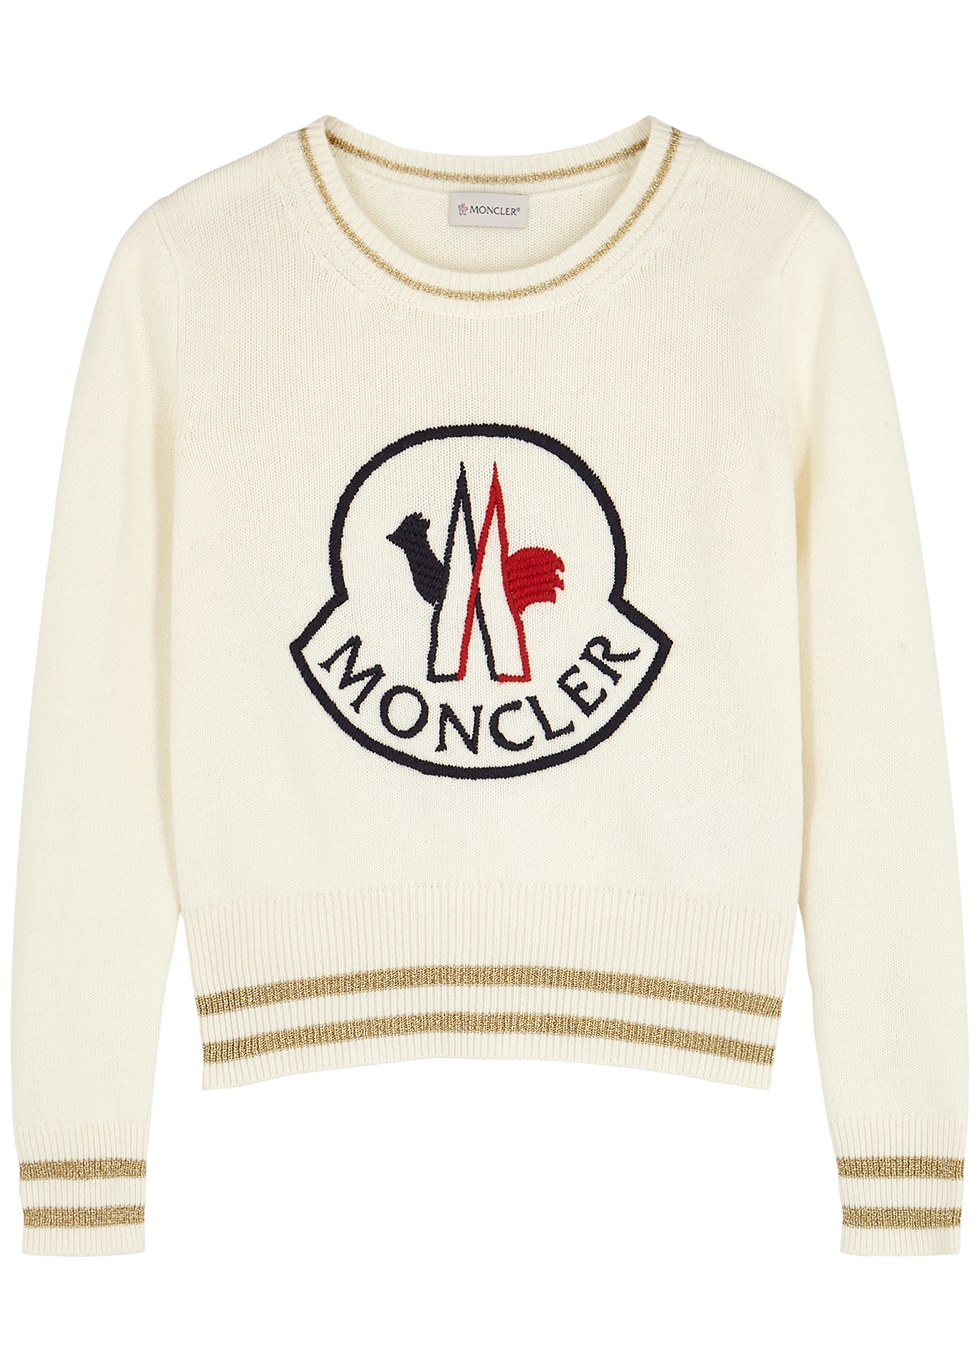 moncler logo jumper